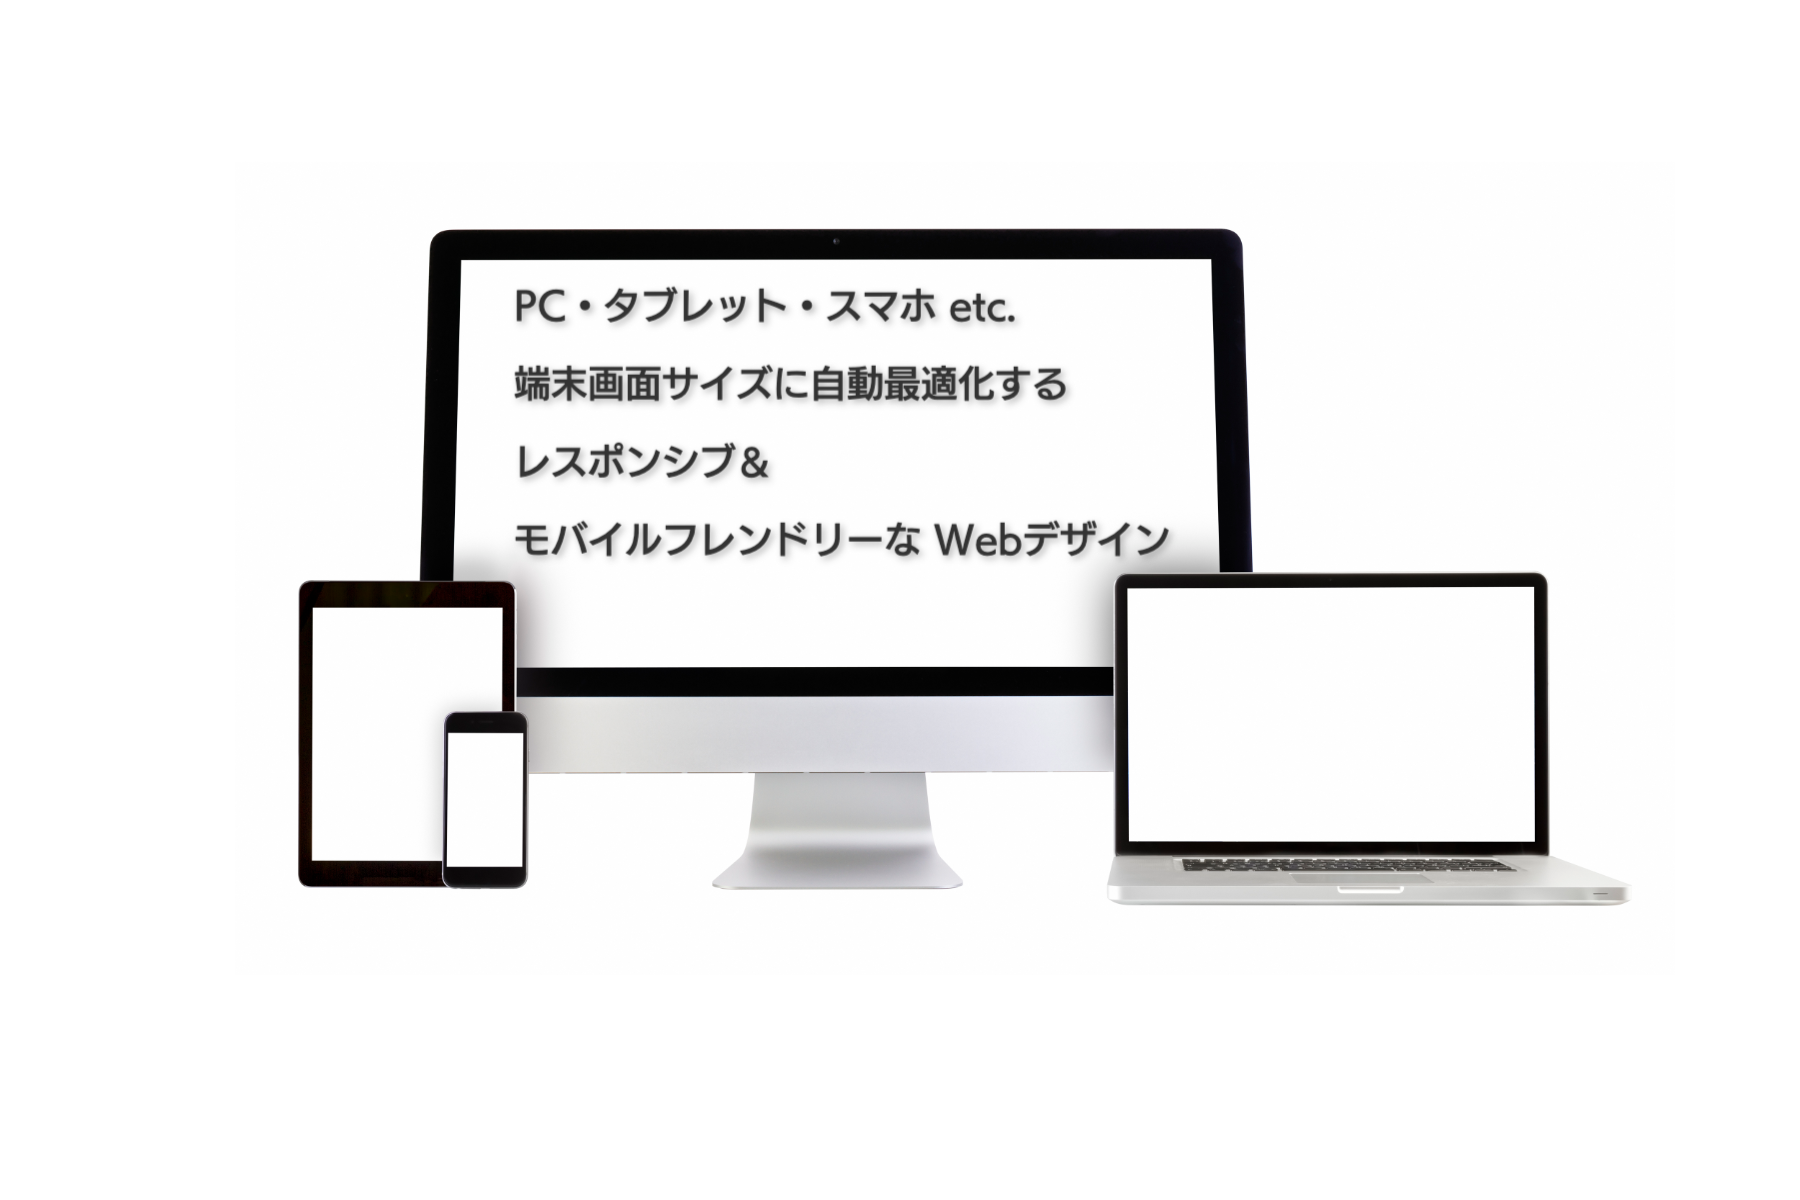 PC・タブレット・スマホ etc.  端末画面サイズに自動最適化するレスポンシブ・モバイルフレンドリーなWebデザイン